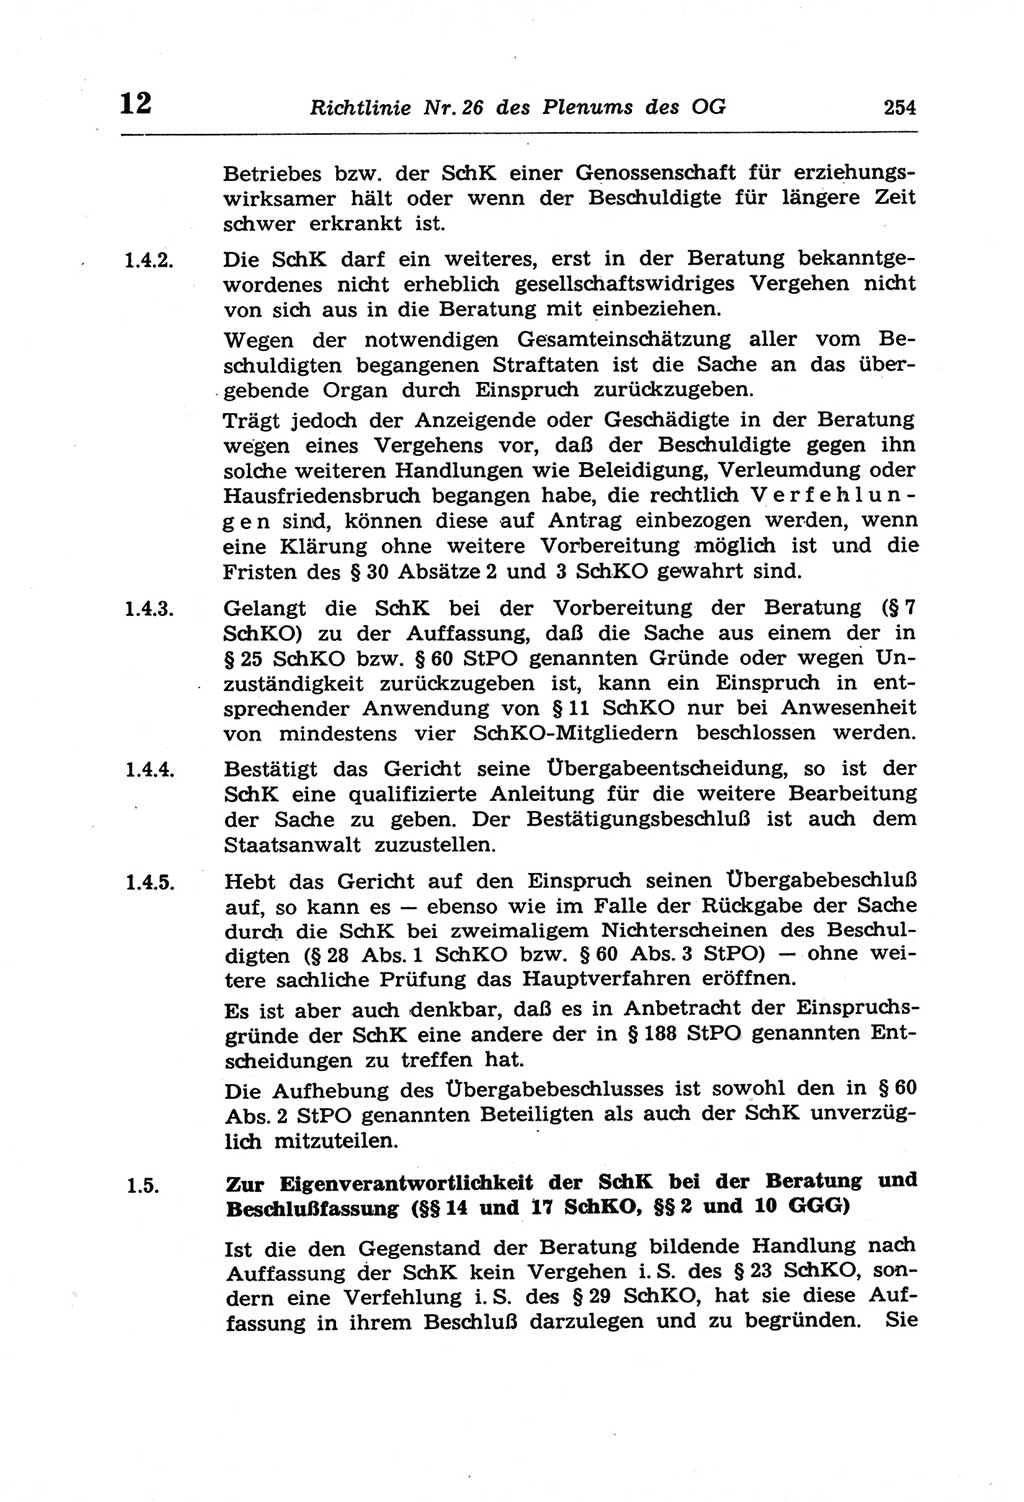 Strafprozeßordnung (StPO) der Deutschen Demokratischen Republik (DDR) und angrenzende Gesetze und Bestimmungen 1968, Seite 254 (StPO Ges. Bstgn. DDR 1968, S. 254)